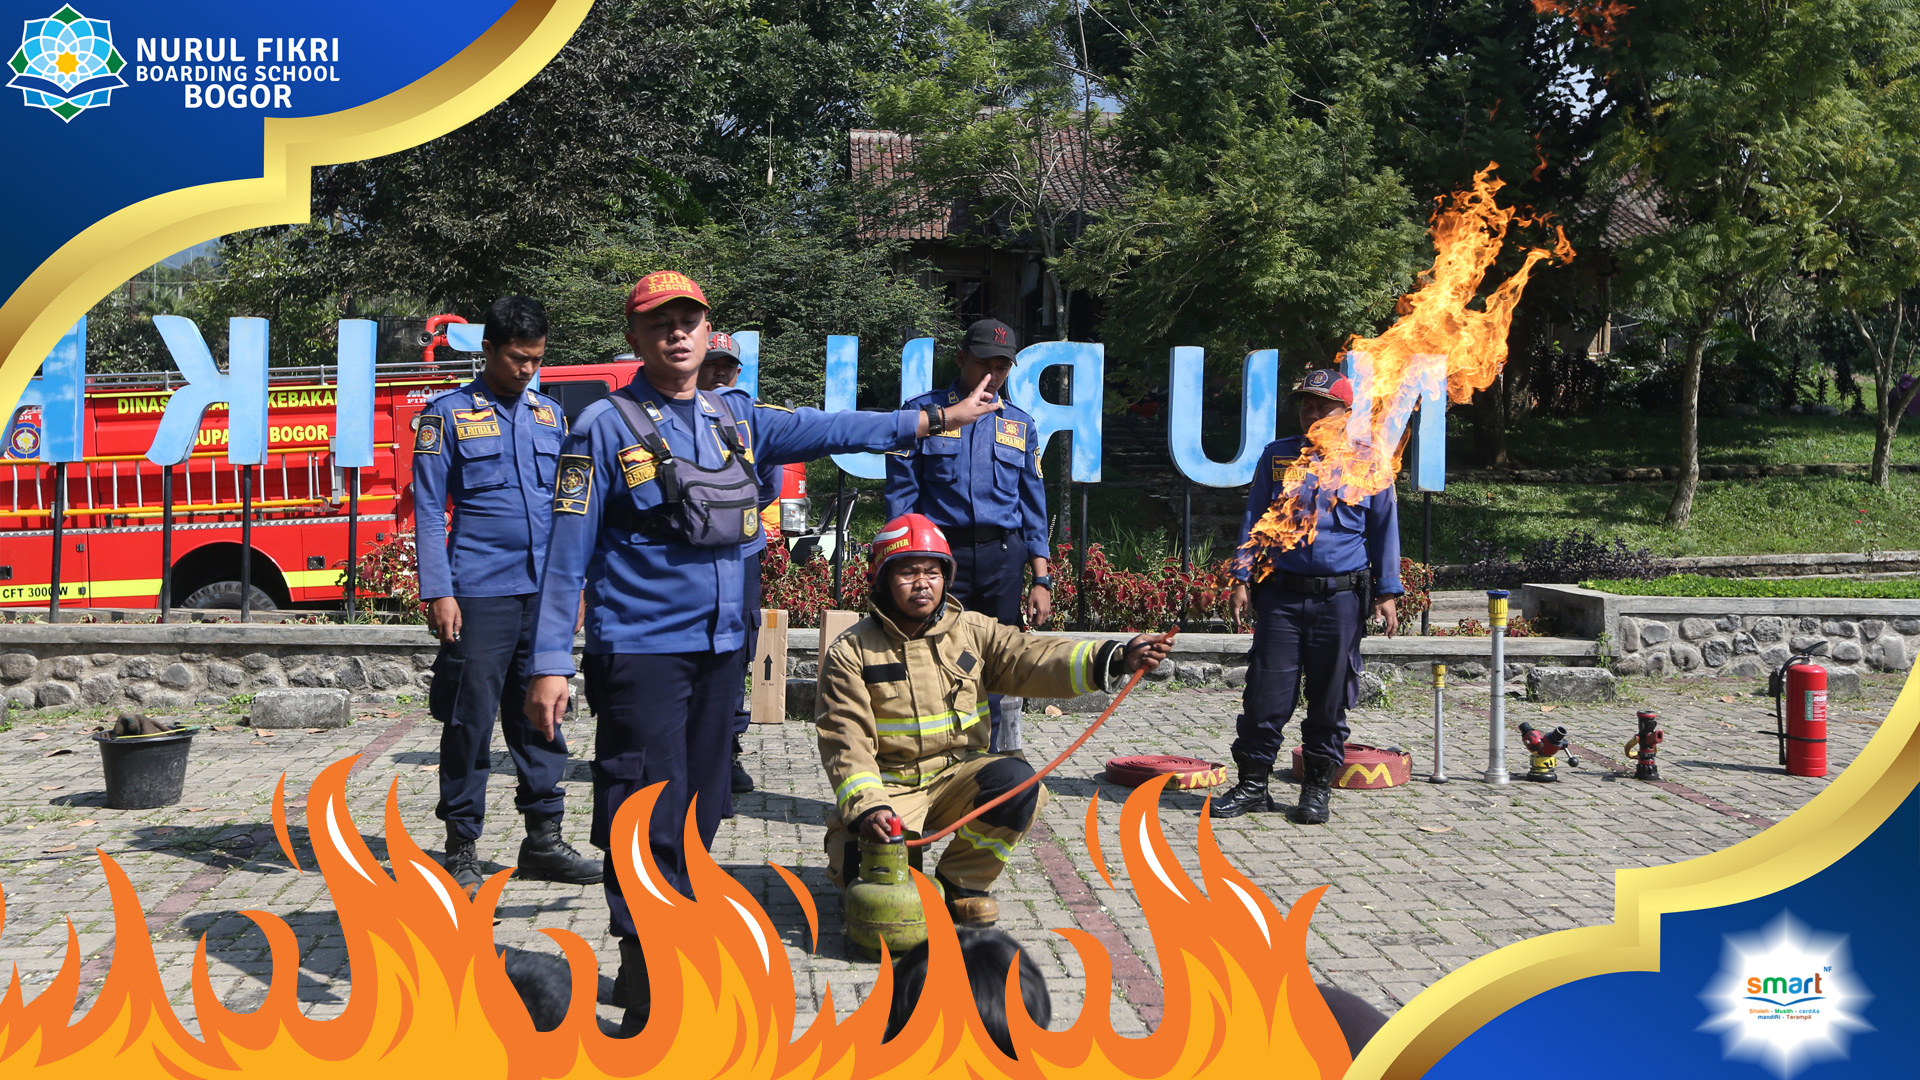 Belajar dari Dinas Pemadam Kebakaran, NFBS Bogor Adakan Penyuluhan untuk Tingkatkan Kesadaran dan Kesiapsiagaan Menghadapi Kebakaran